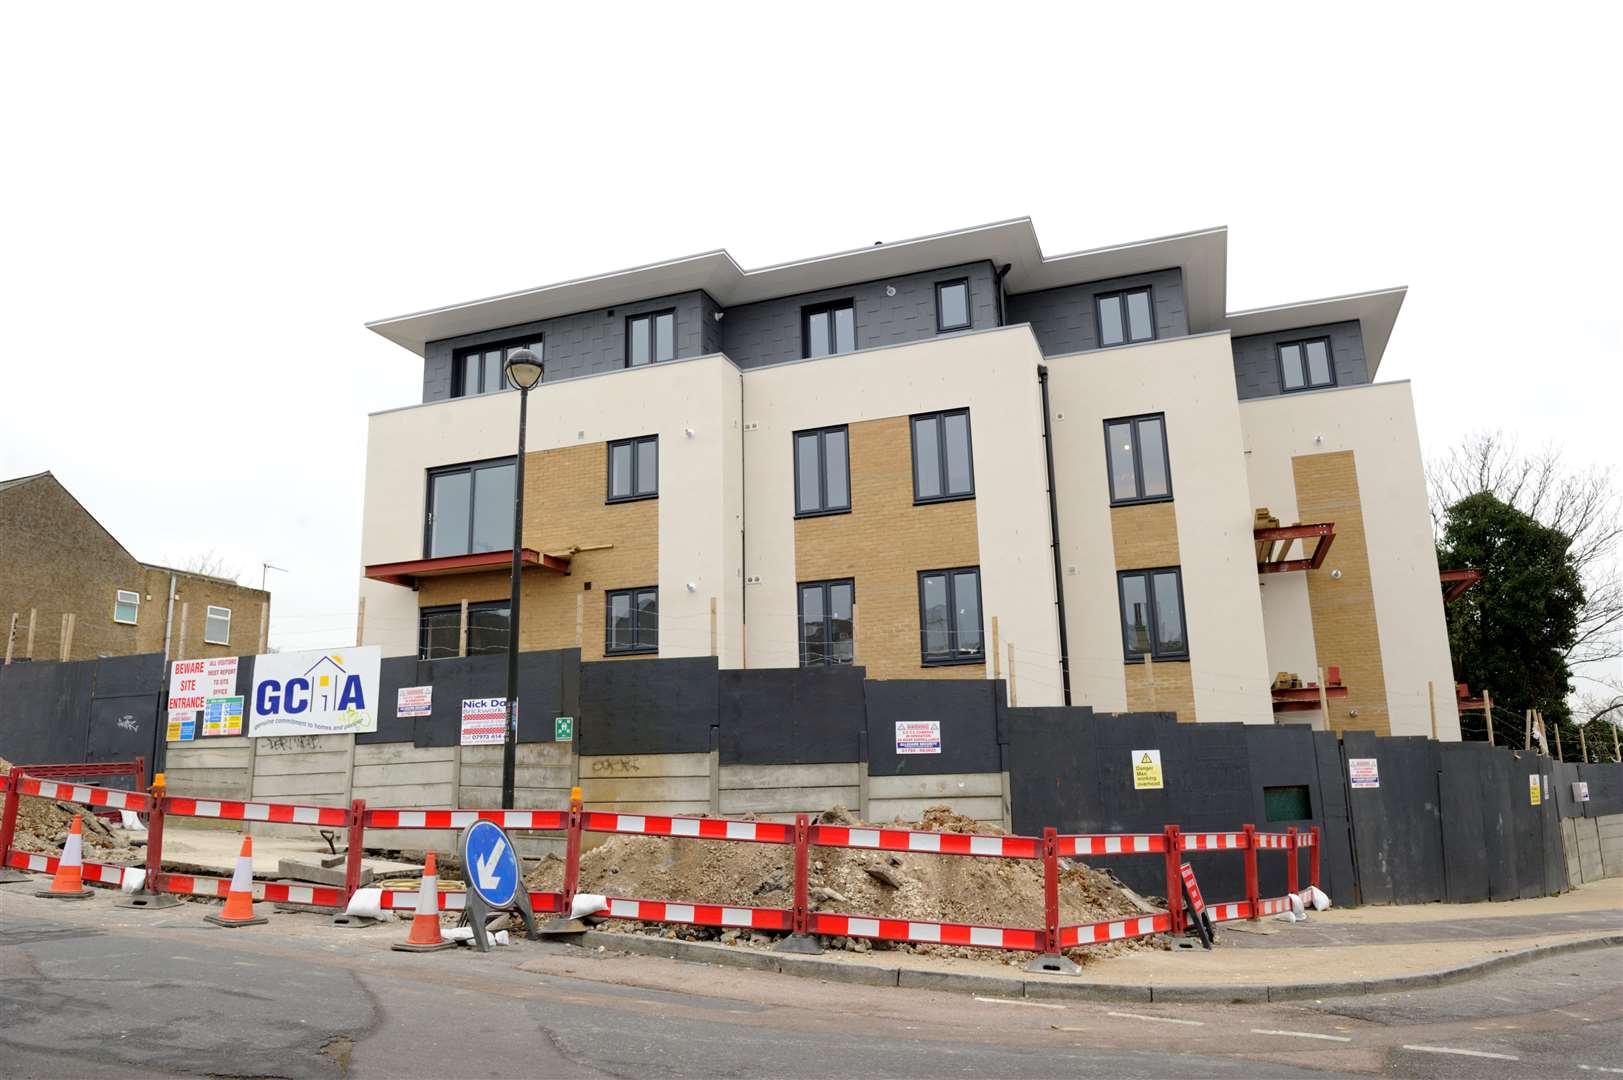 Gravesend Churches Housing Association block of new flats being built in Burch Road, Northfleet.